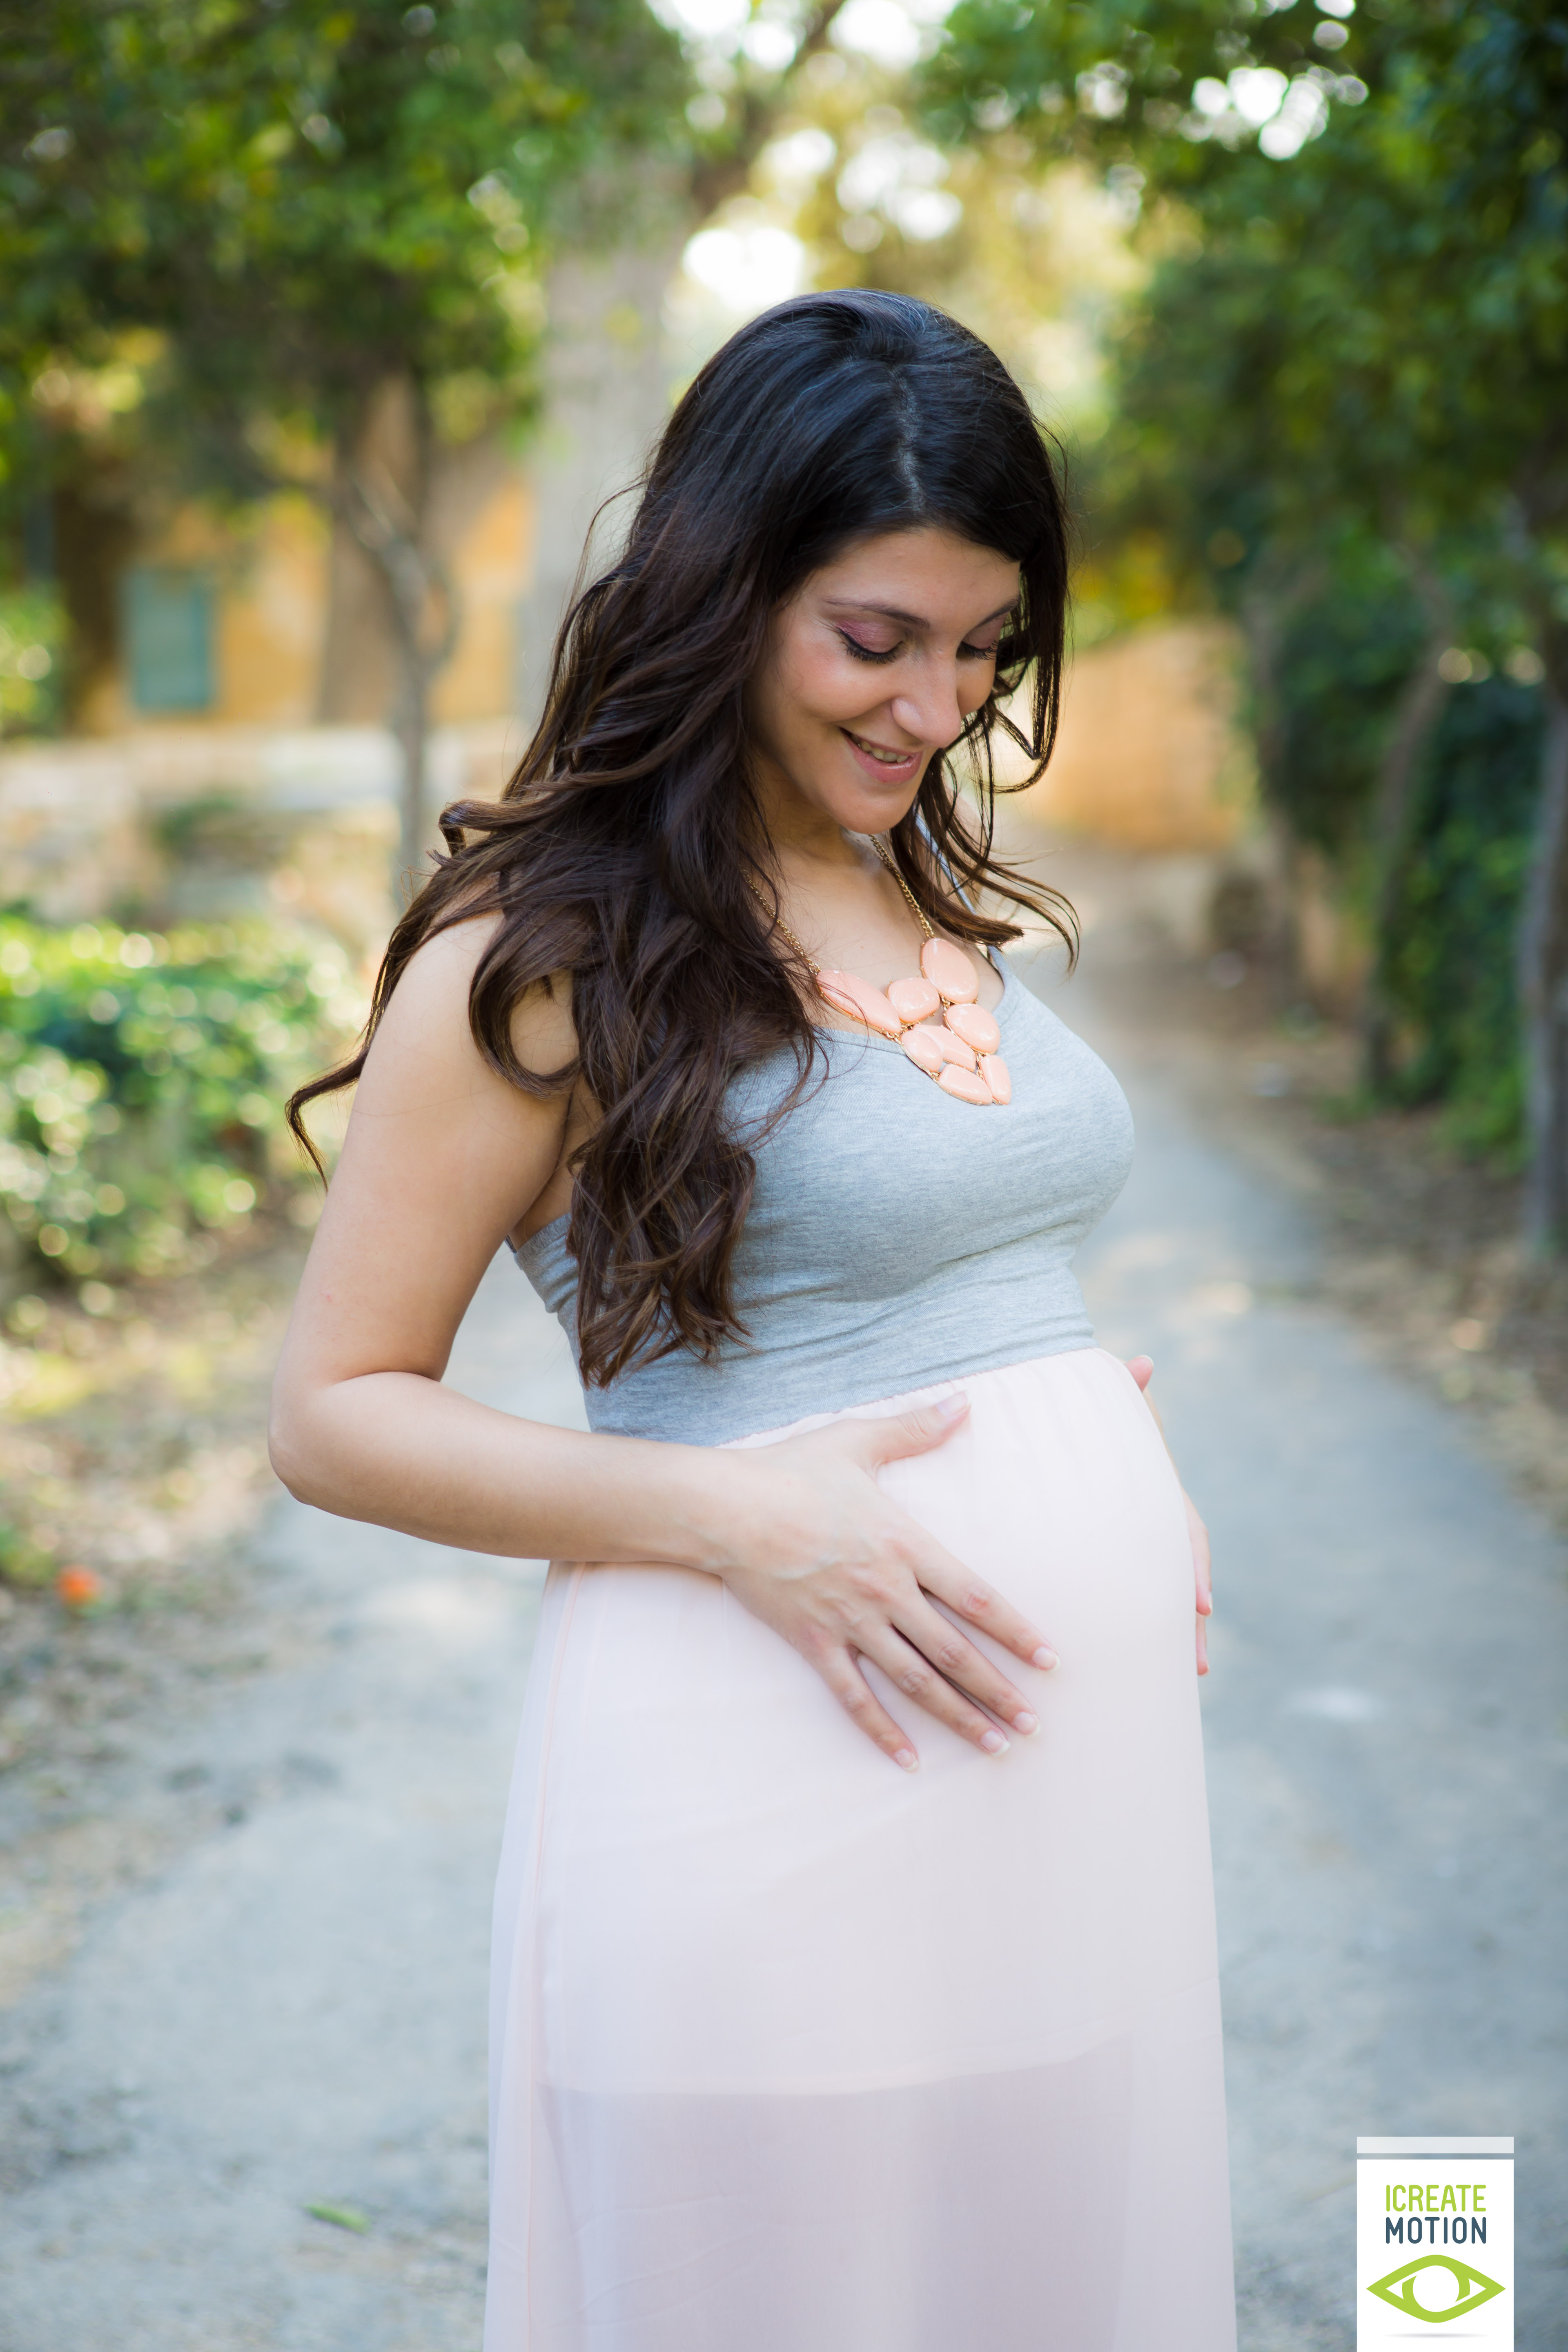 Maternity Shoot (25) - iCreatemotion Photography | iCreatemotion ...